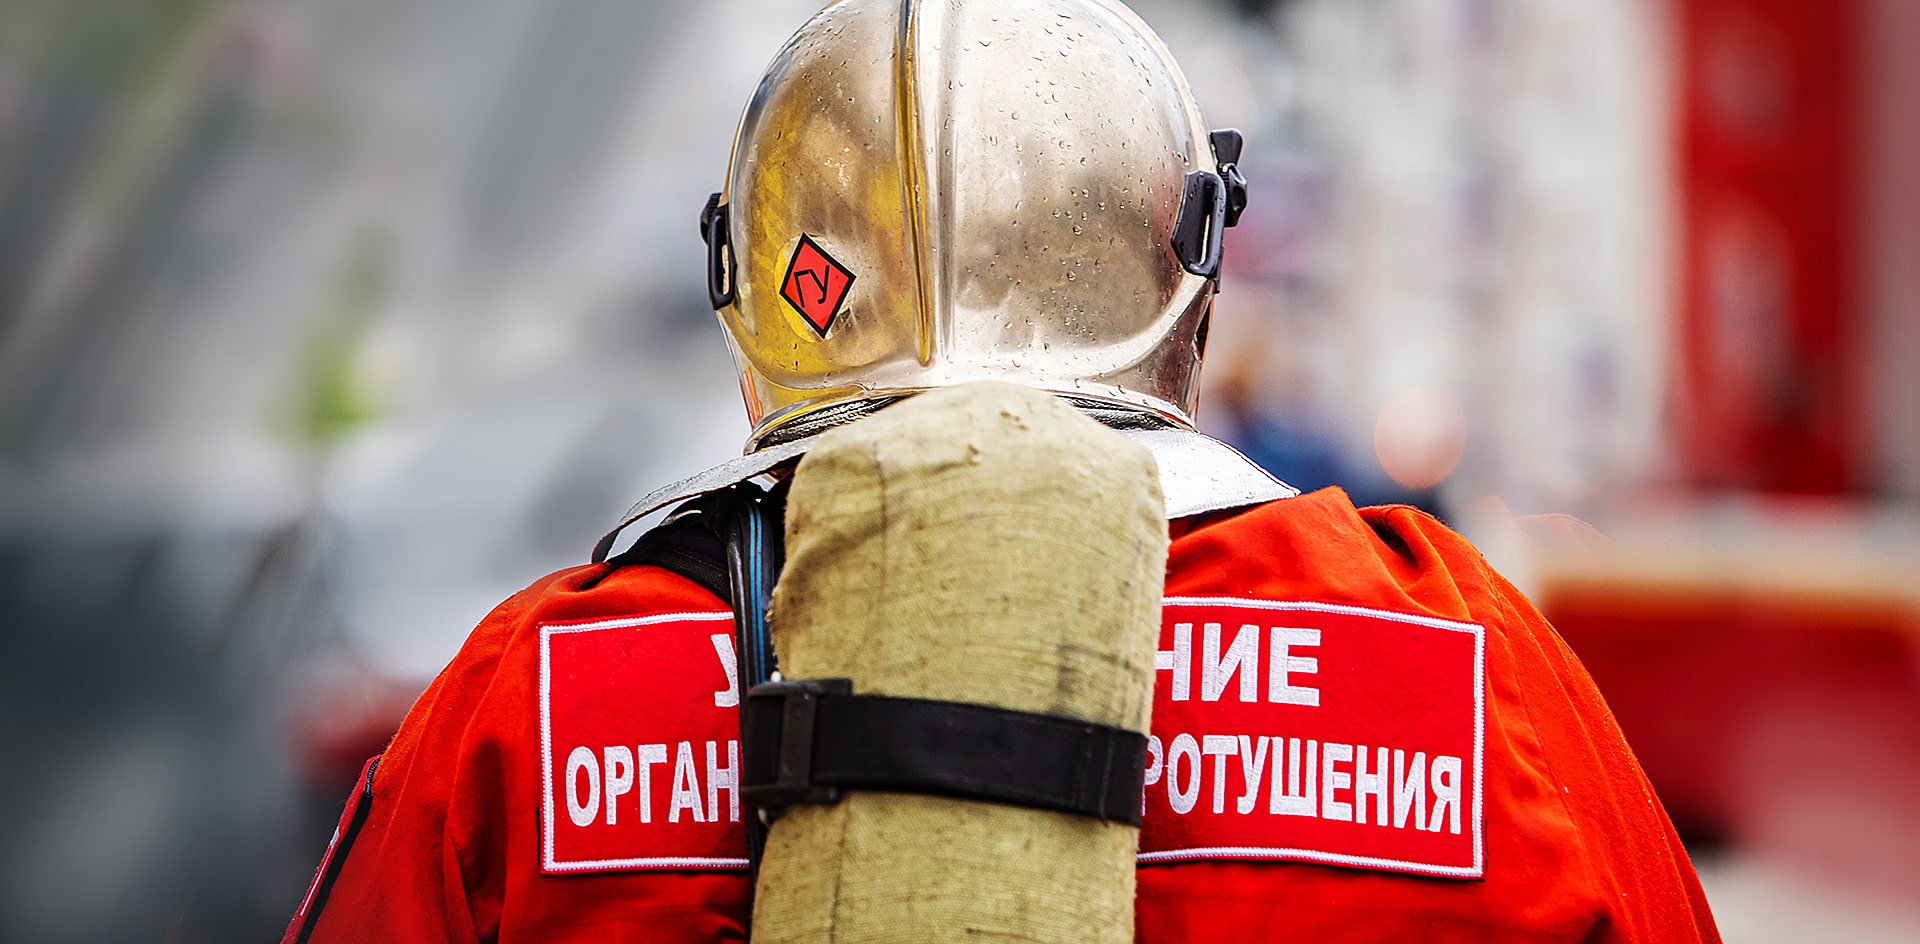 Московские пожарные первыми опробуют вакцину от коронавируса